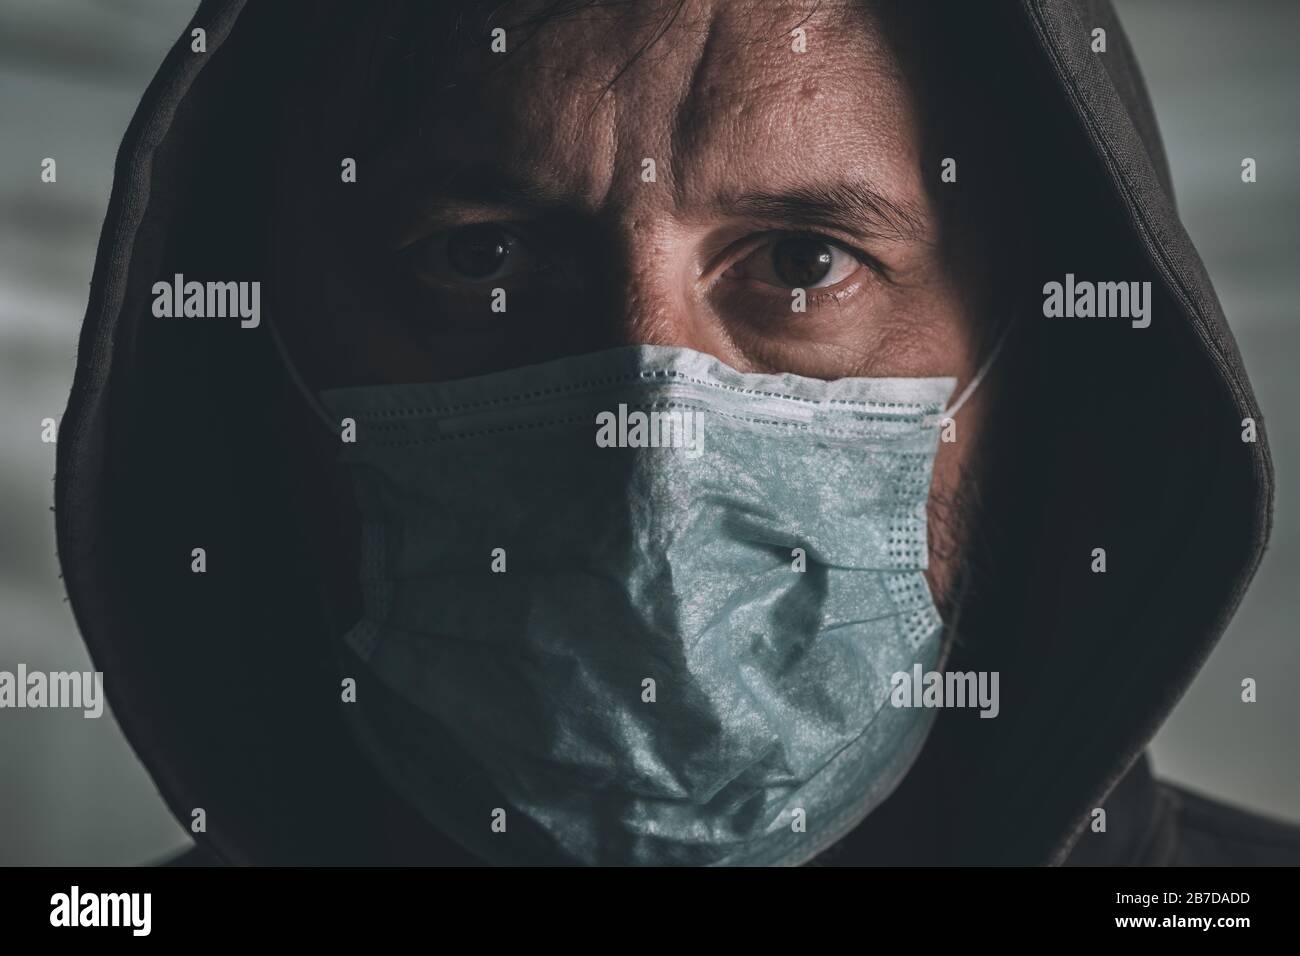 Uomo impaurito con maschera respiratoria usa e getta che copre il suo viso durante l'epidemia di virus epidemico Foto Stock